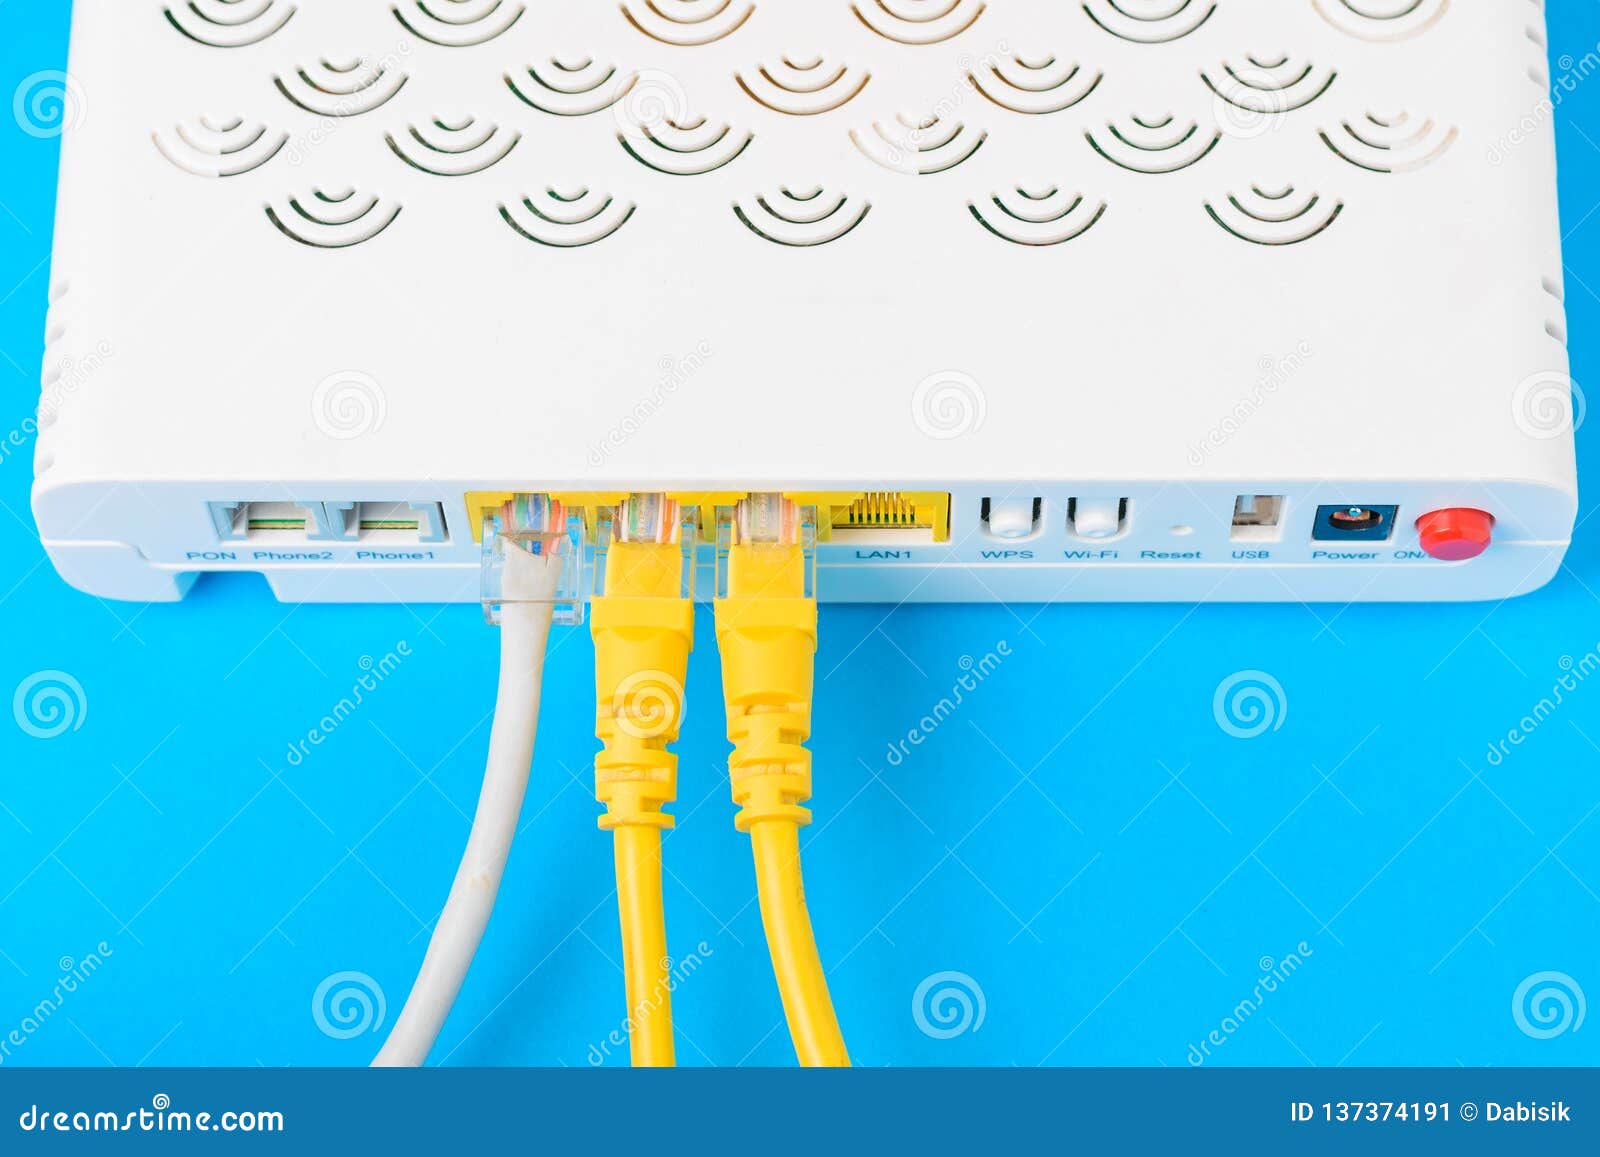 Интернет кабельный модем. Модем кабельный ТСМ 471. Кабель для модема. Модем роутер. Интернет модем под кабель.